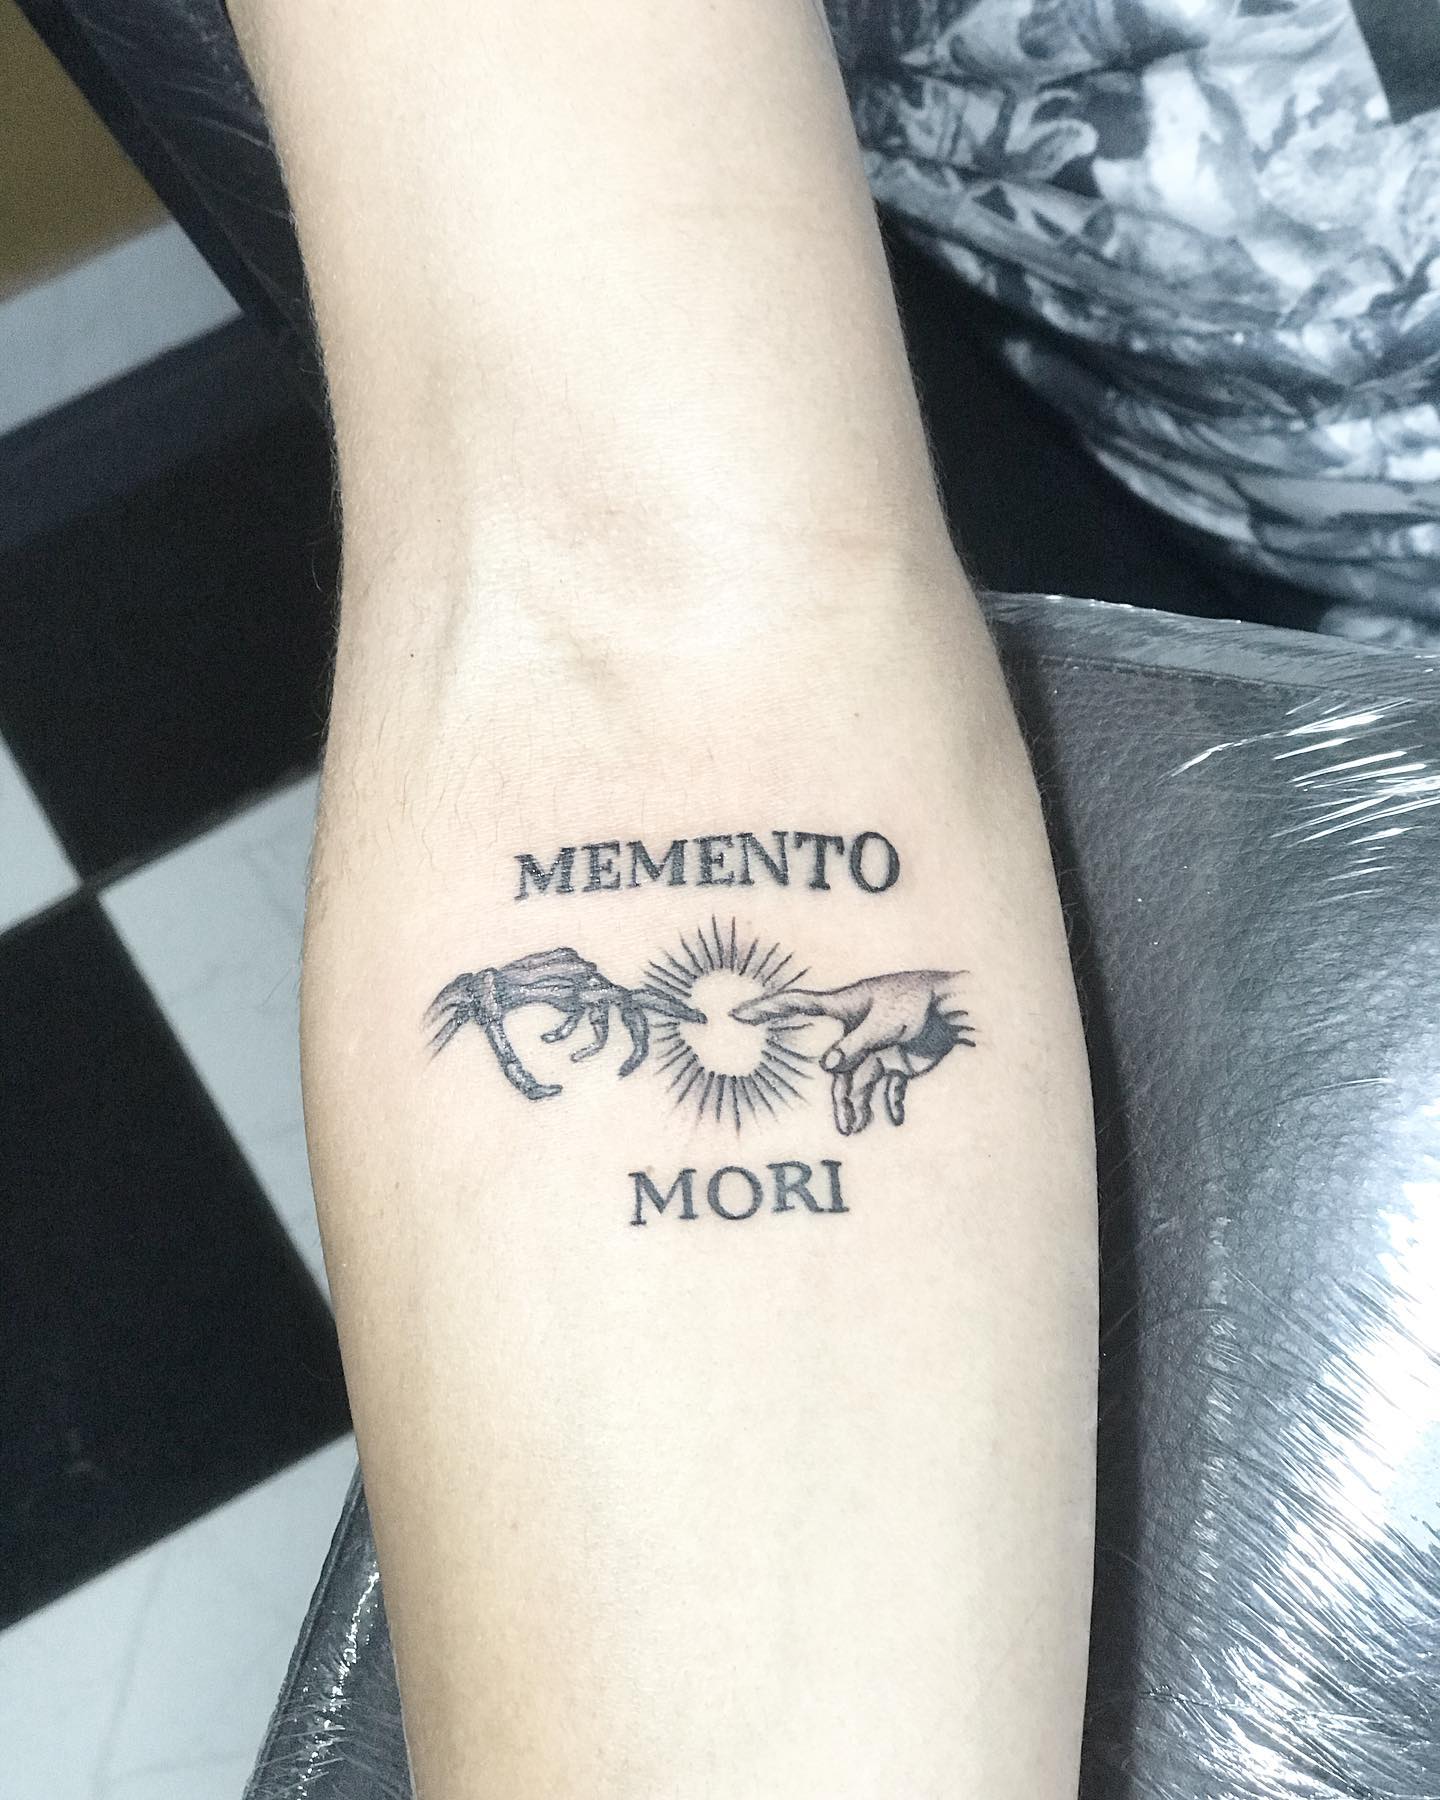 Tatuaje de Memento Mori en el antebrazo.